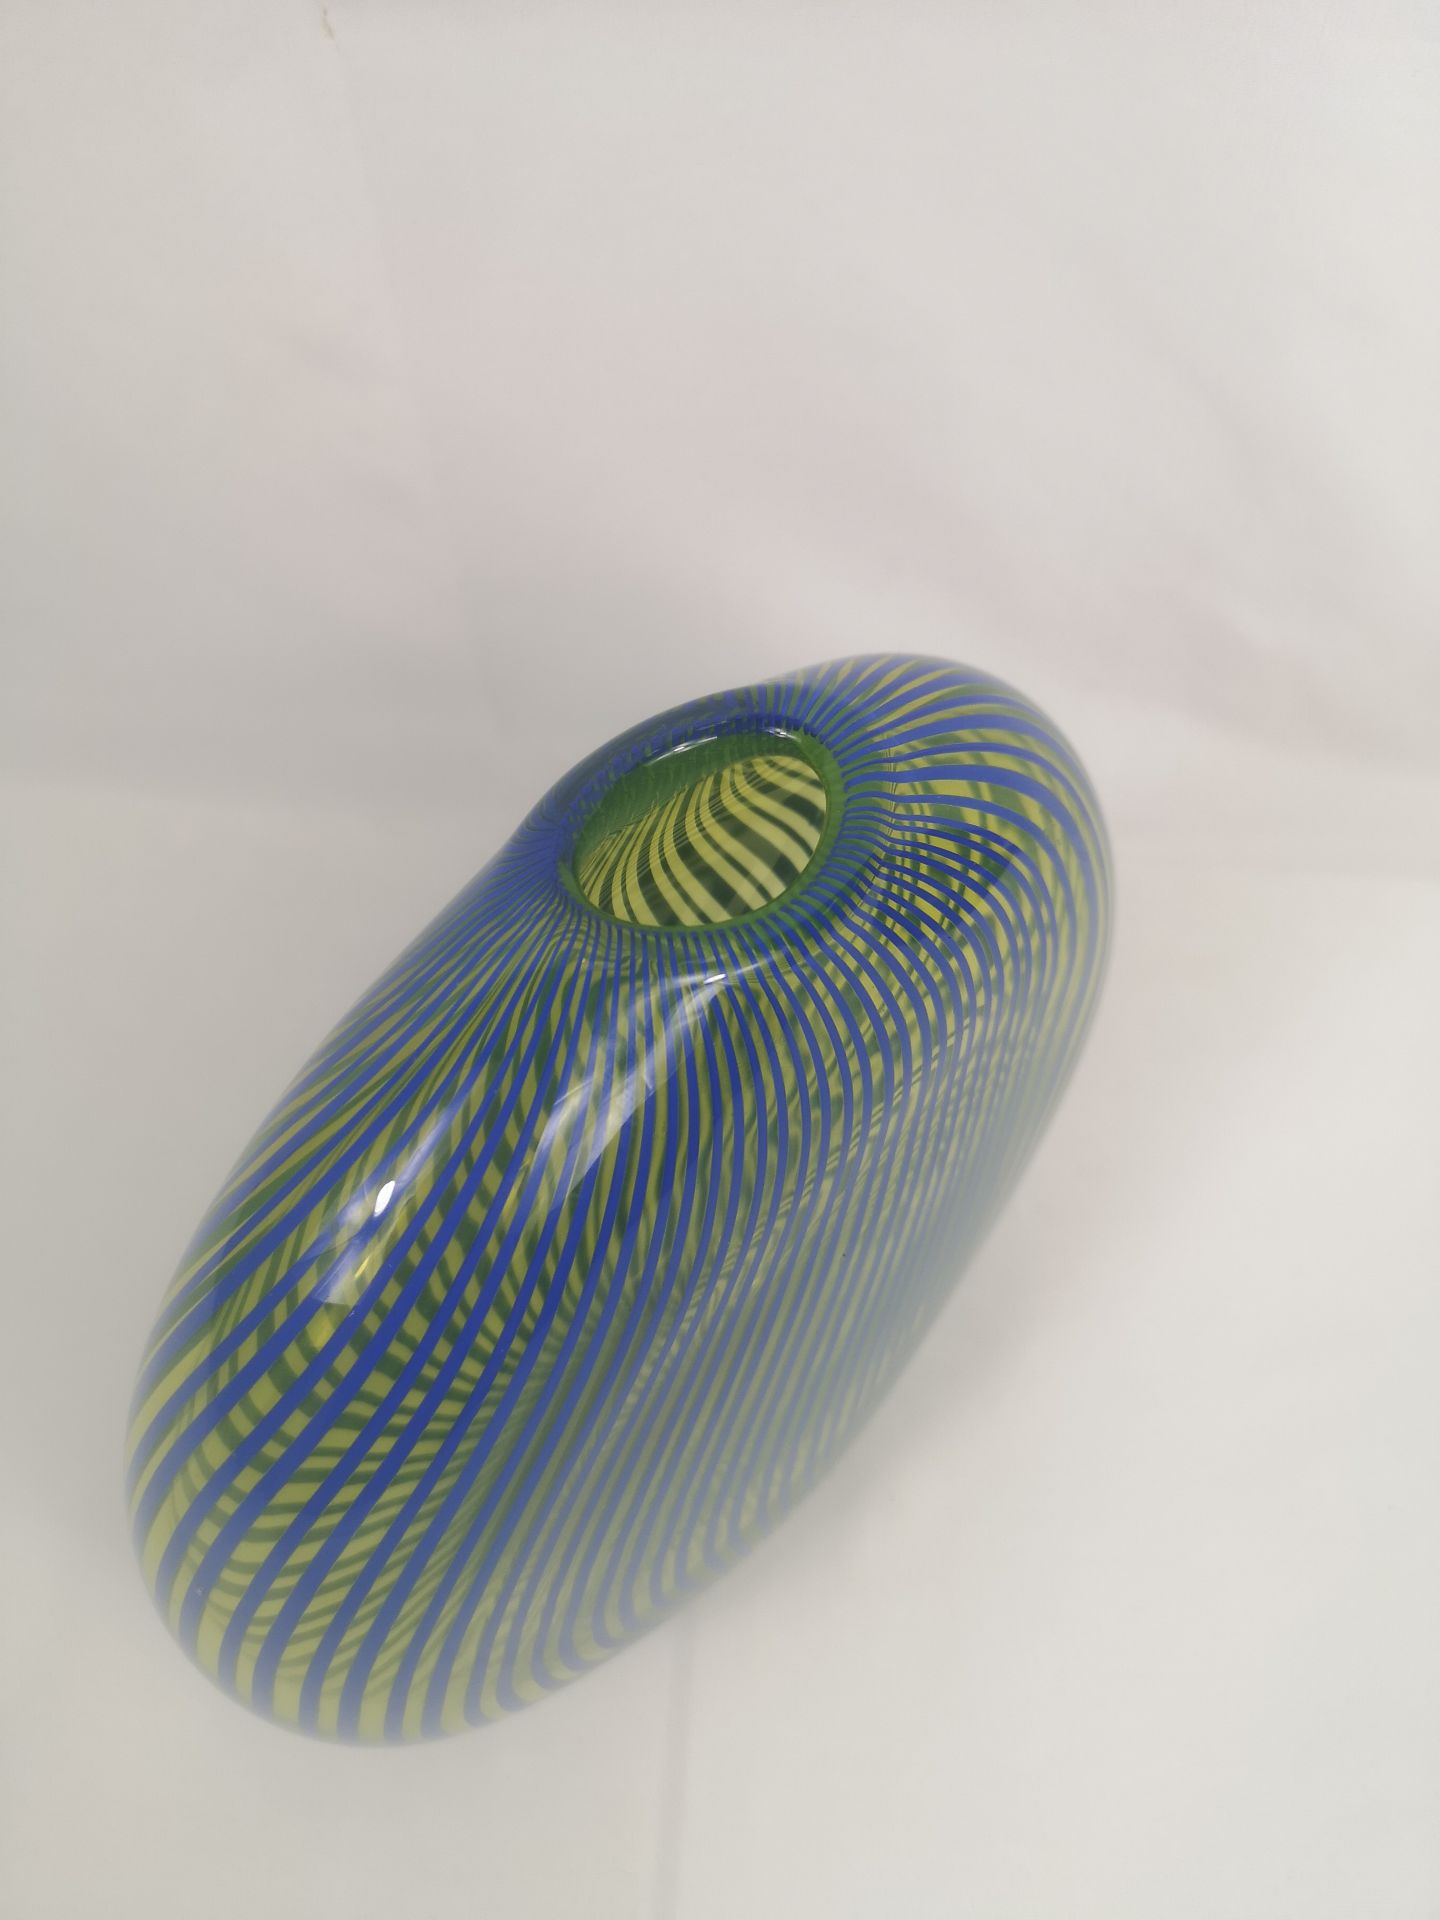 Peter Secrest art glass vase - Image 3 of 5